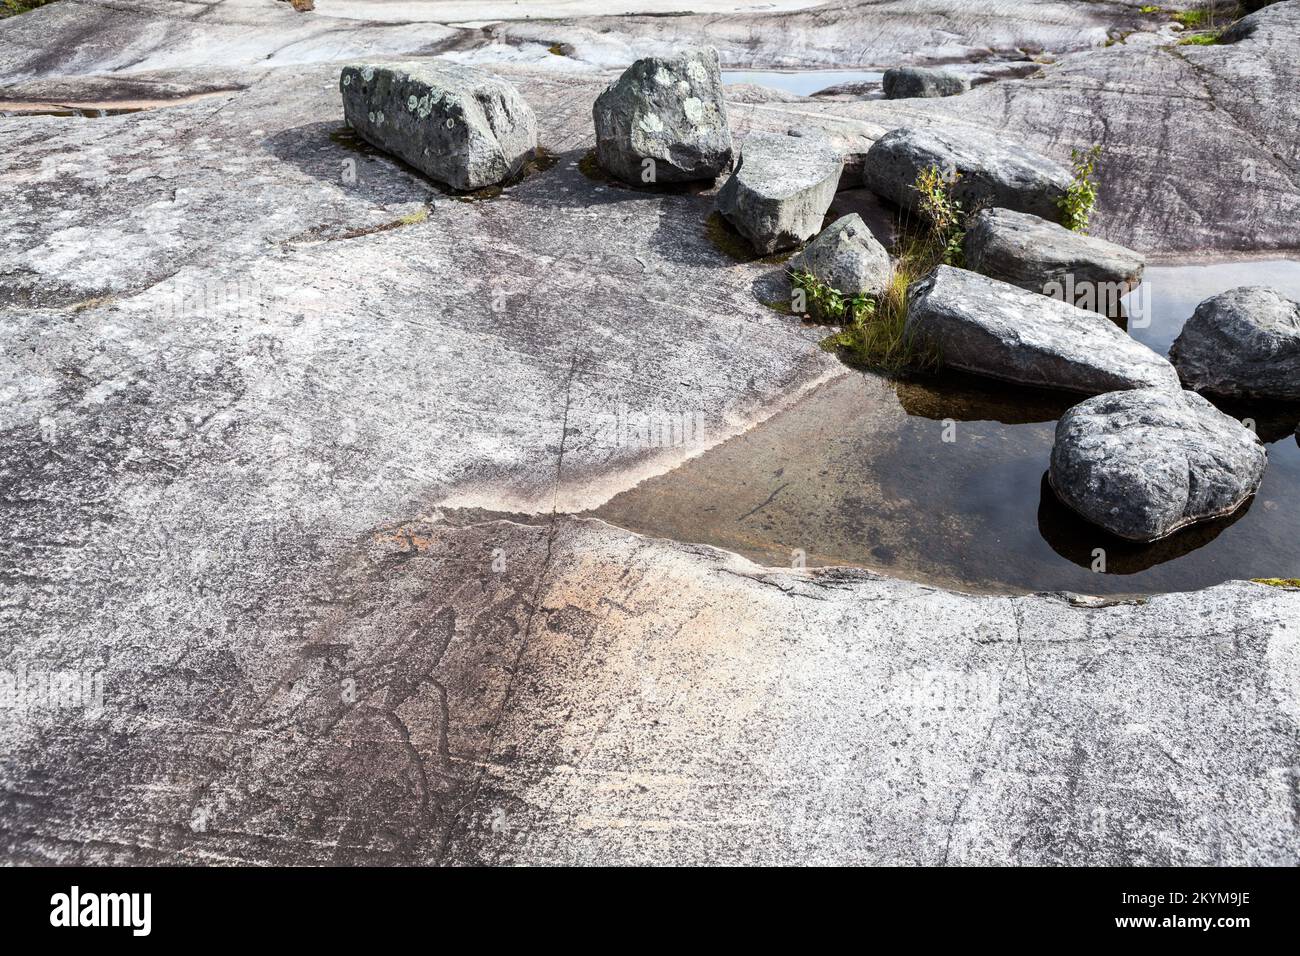 Die Petroglyphen des Weißen Meeres sind auf der Felswand. Archäologischer Komplex Zalavruga in der Nähe von Belomorsk, Republik Karelien, Russland Stockfoto